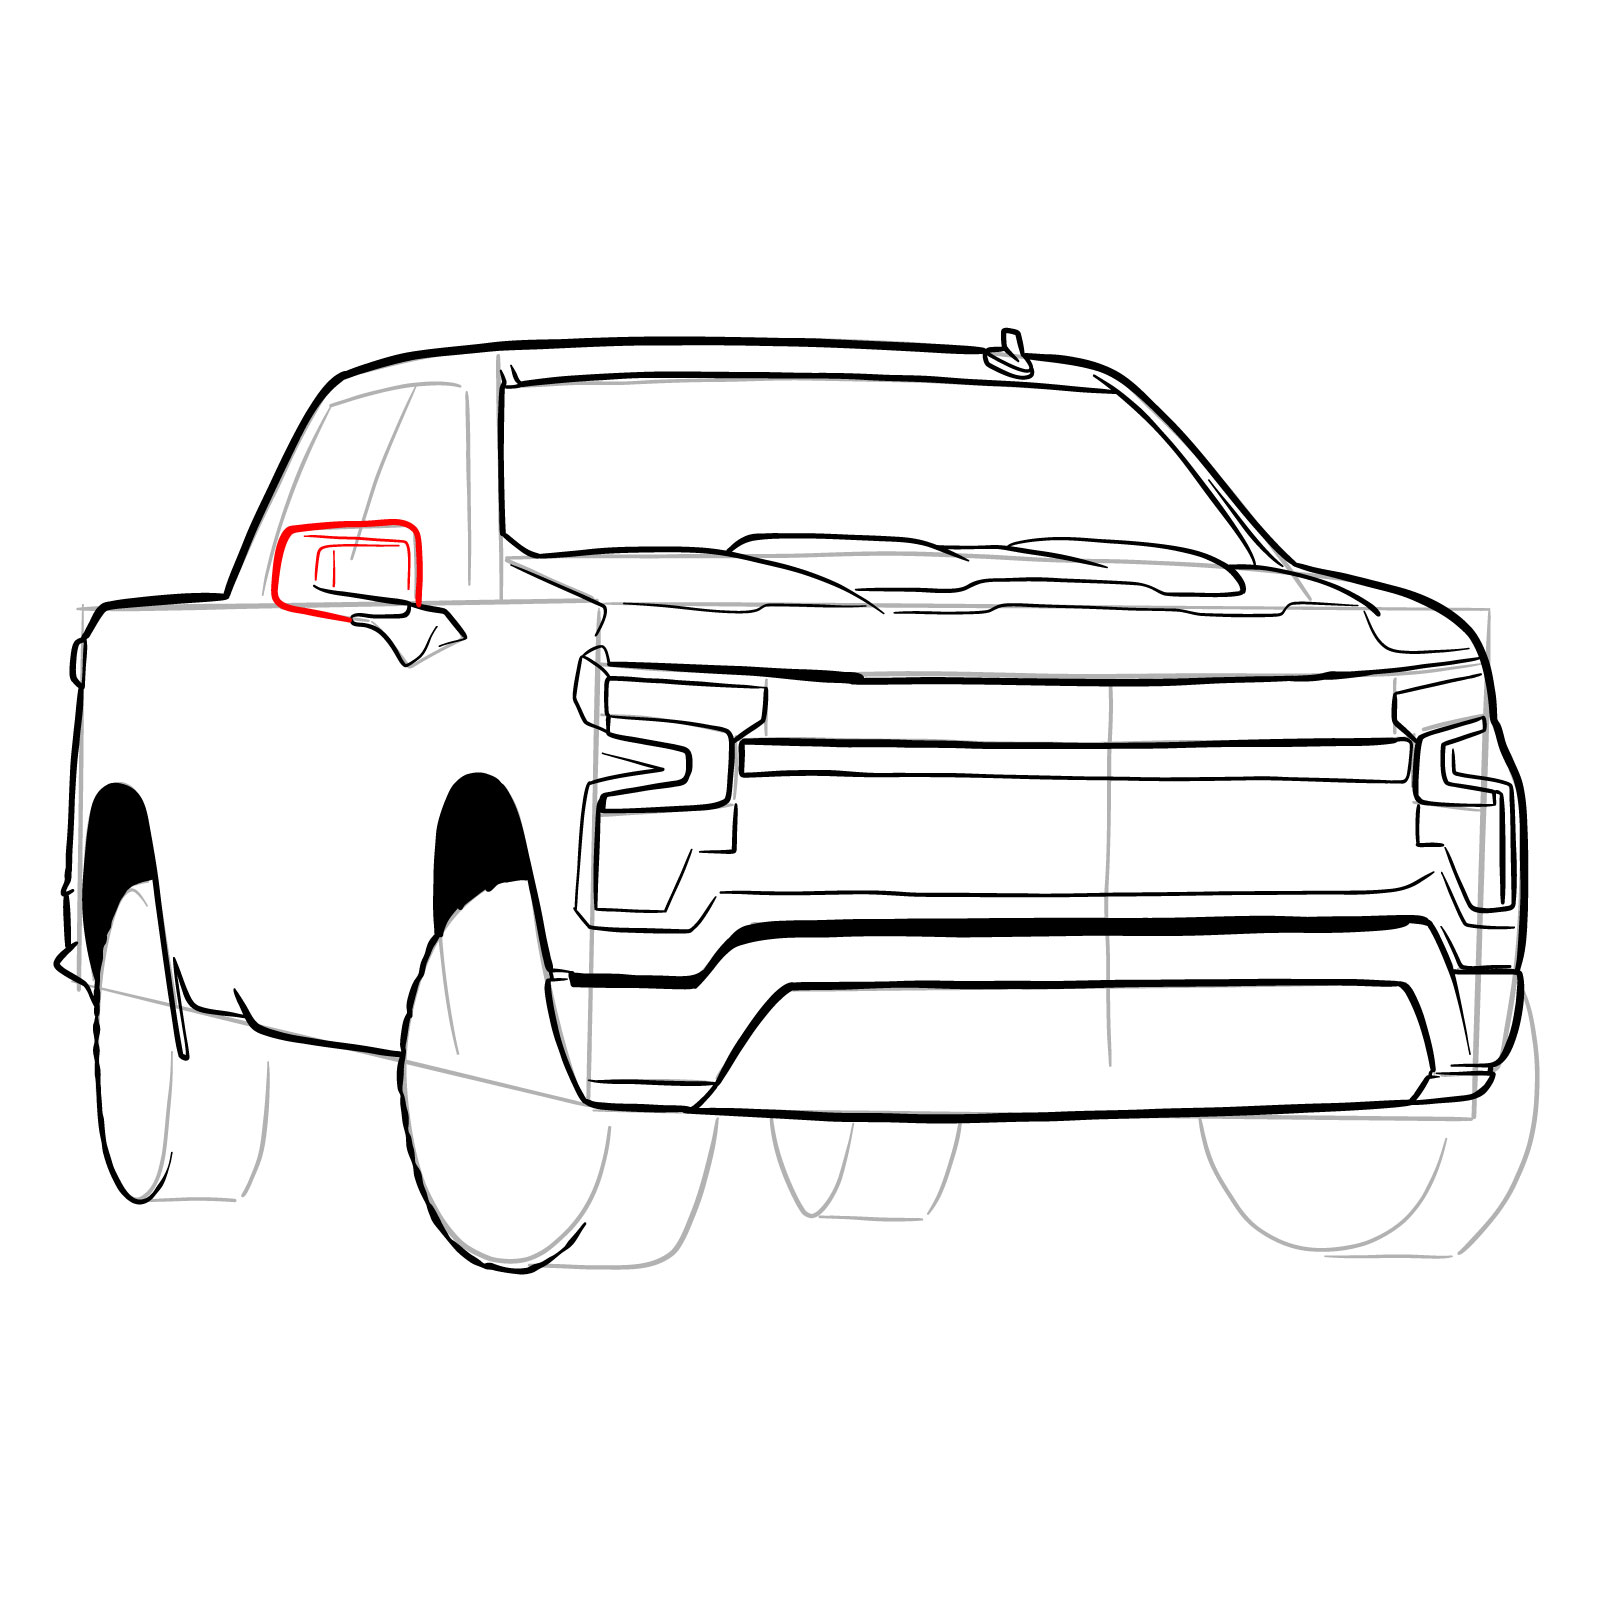 How to draw a 2022 Chevy Silverado - step 23